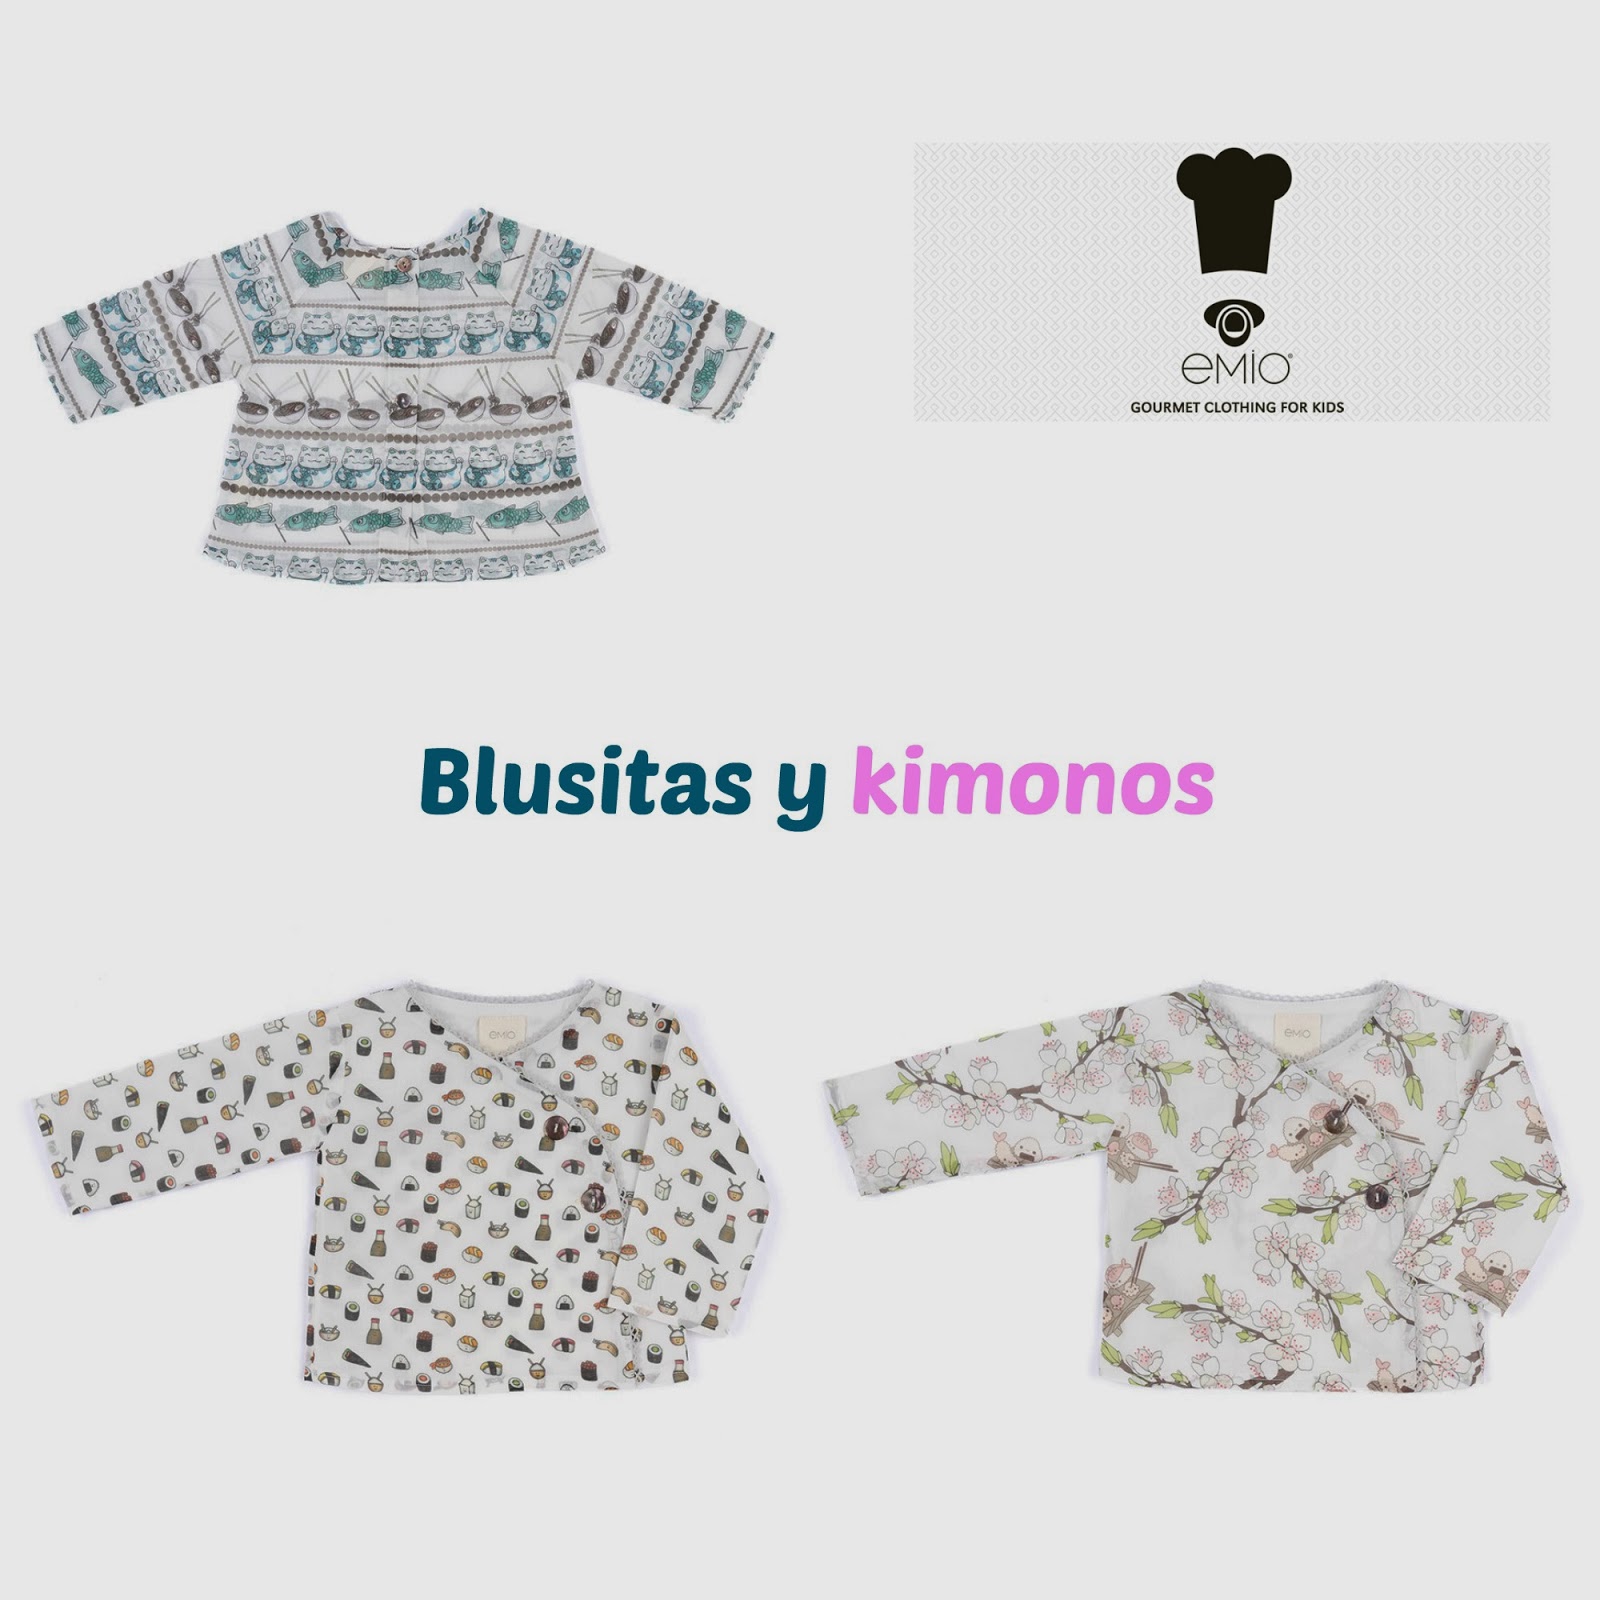 Emio, gourmet clothing for kids - El armario de Lu by Jane